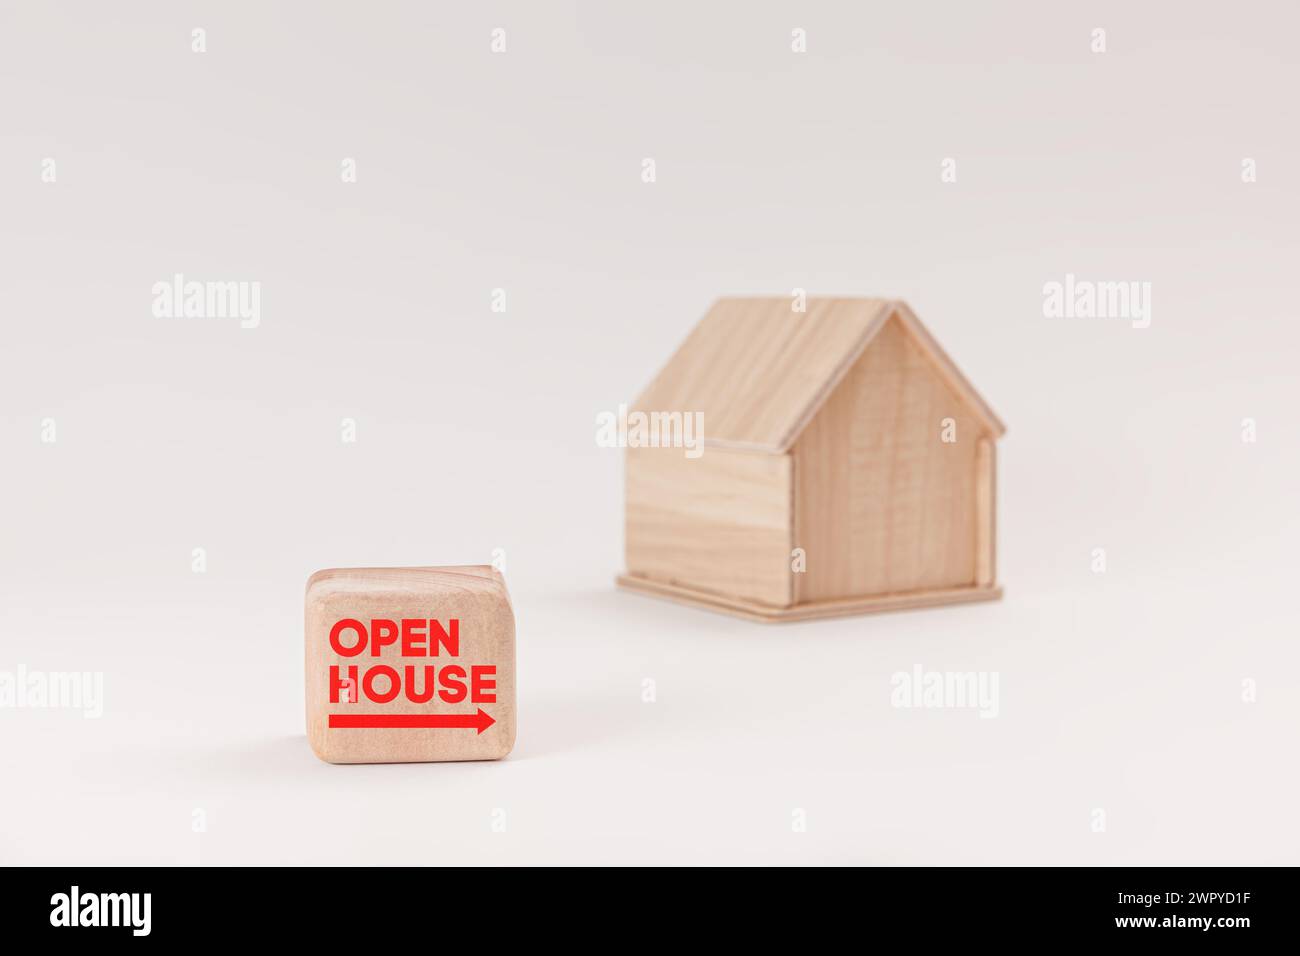 Vereinfachtes hölzernes Hausmodell isoliert auf hellgrünem Hintergrund, mit Text Open House auf dem Schild. Stockfoto